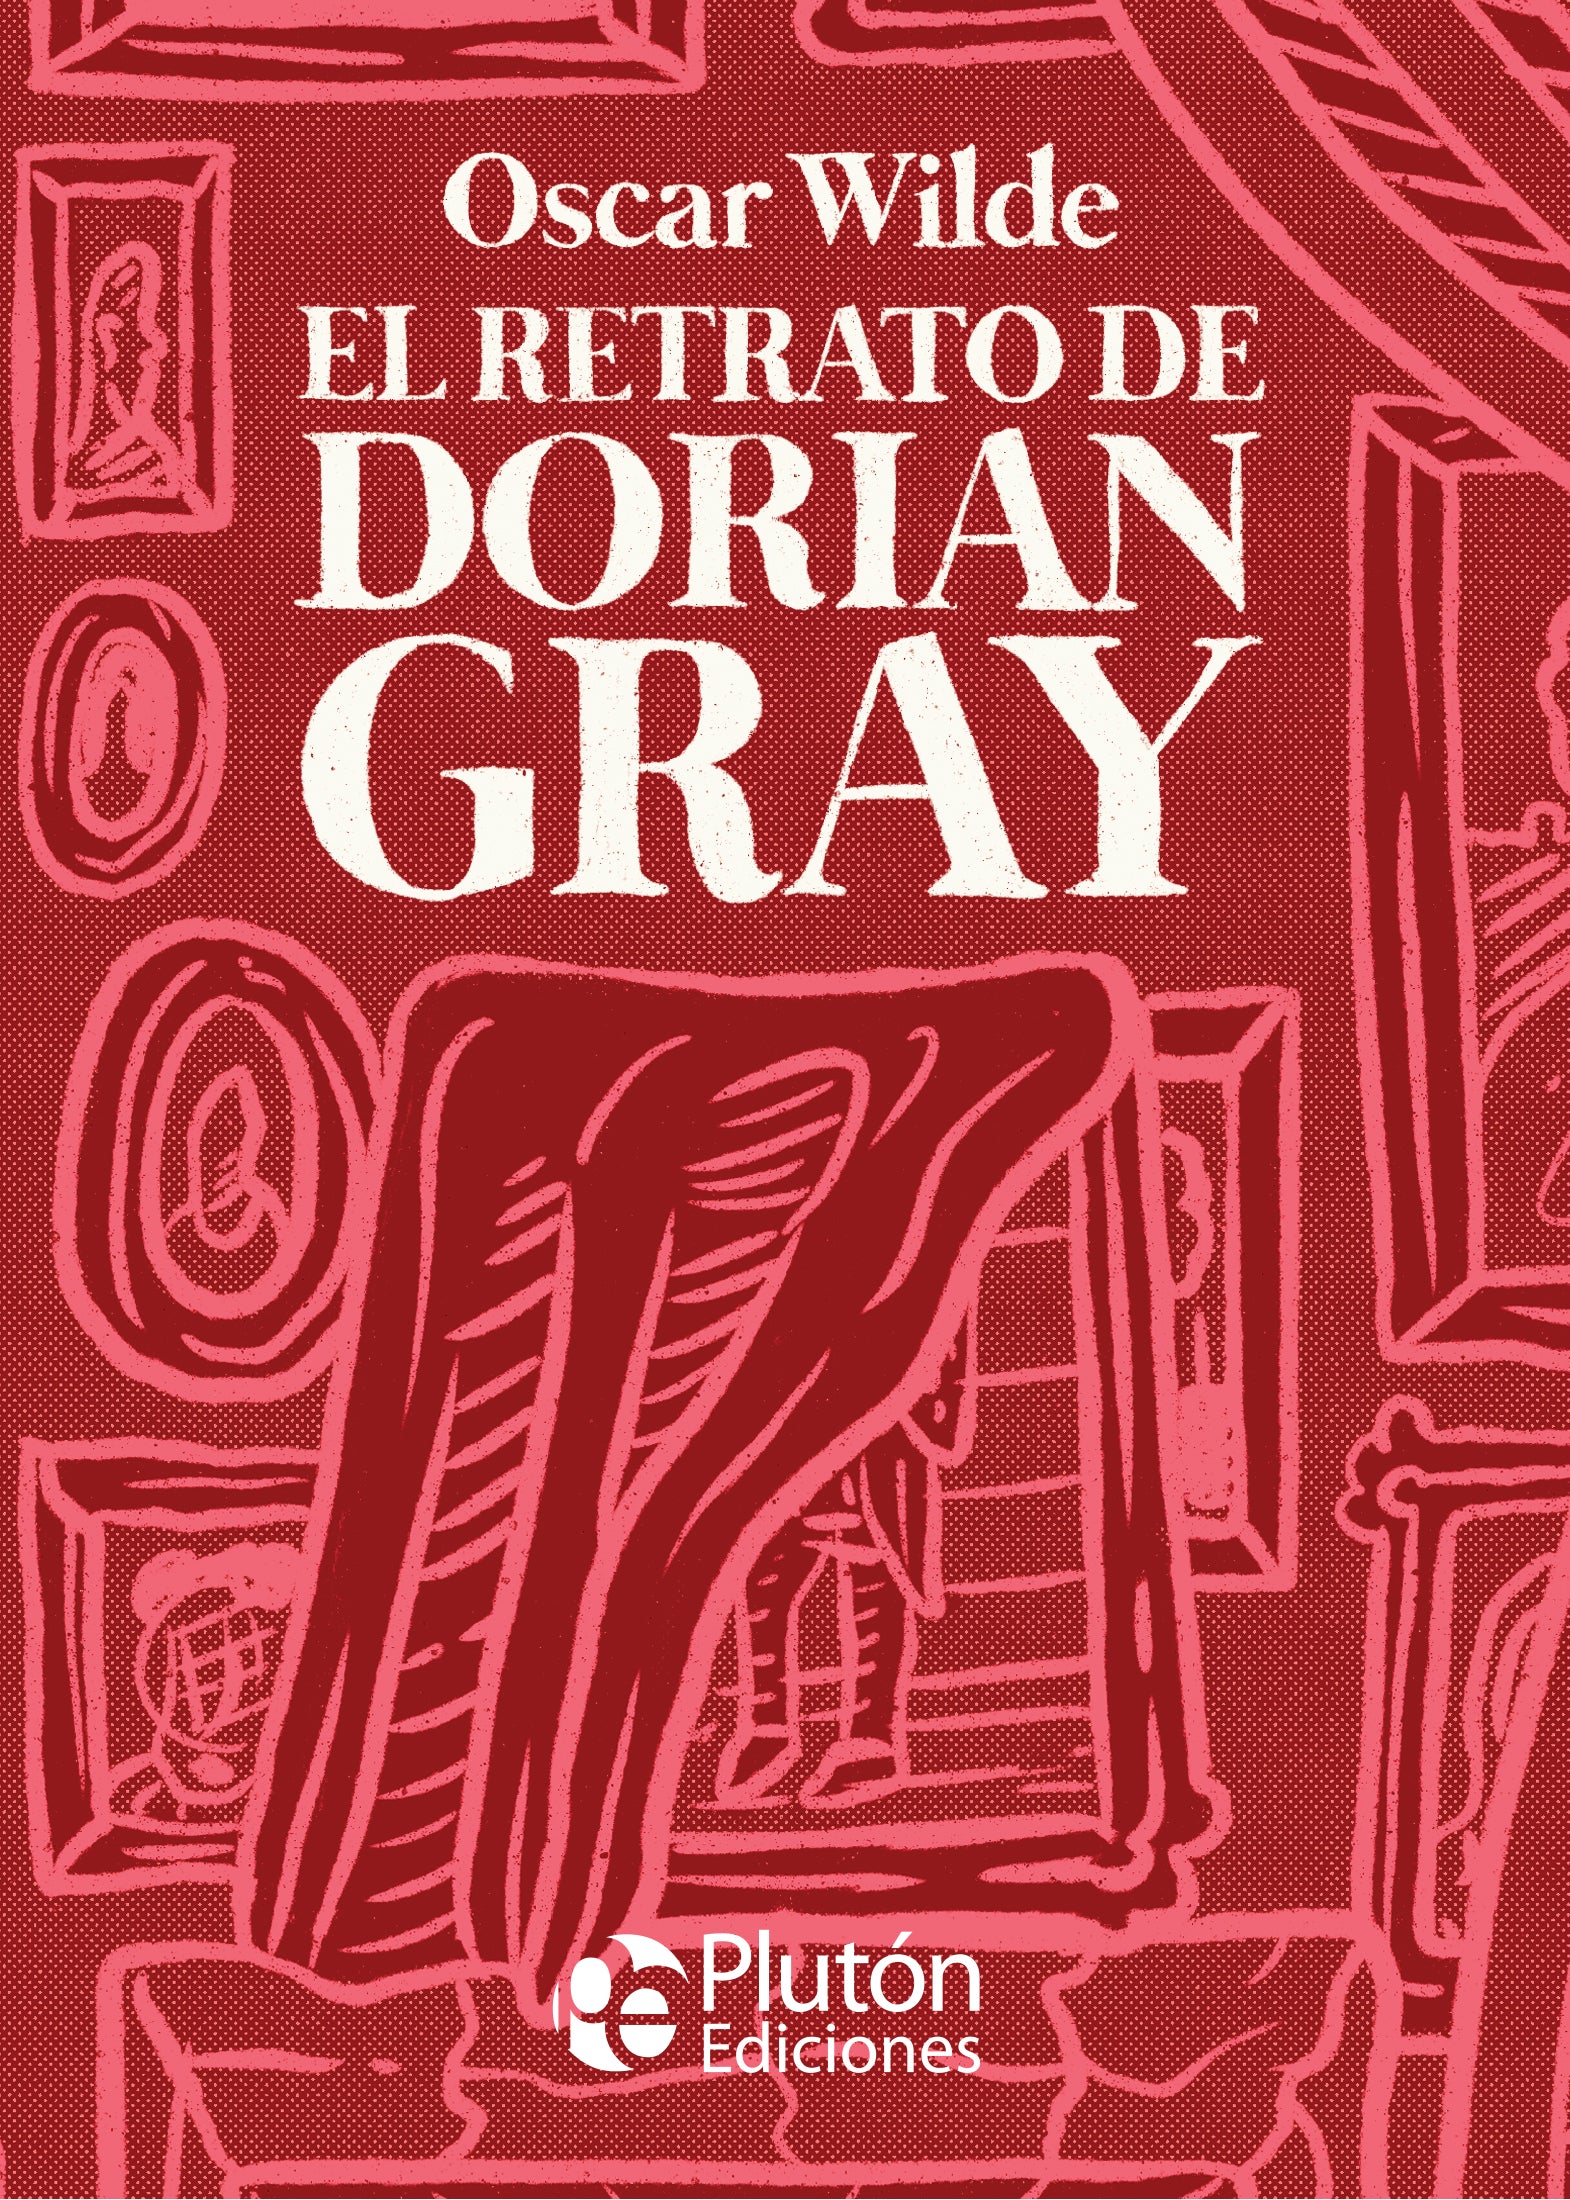 Retrato Dorian Gray